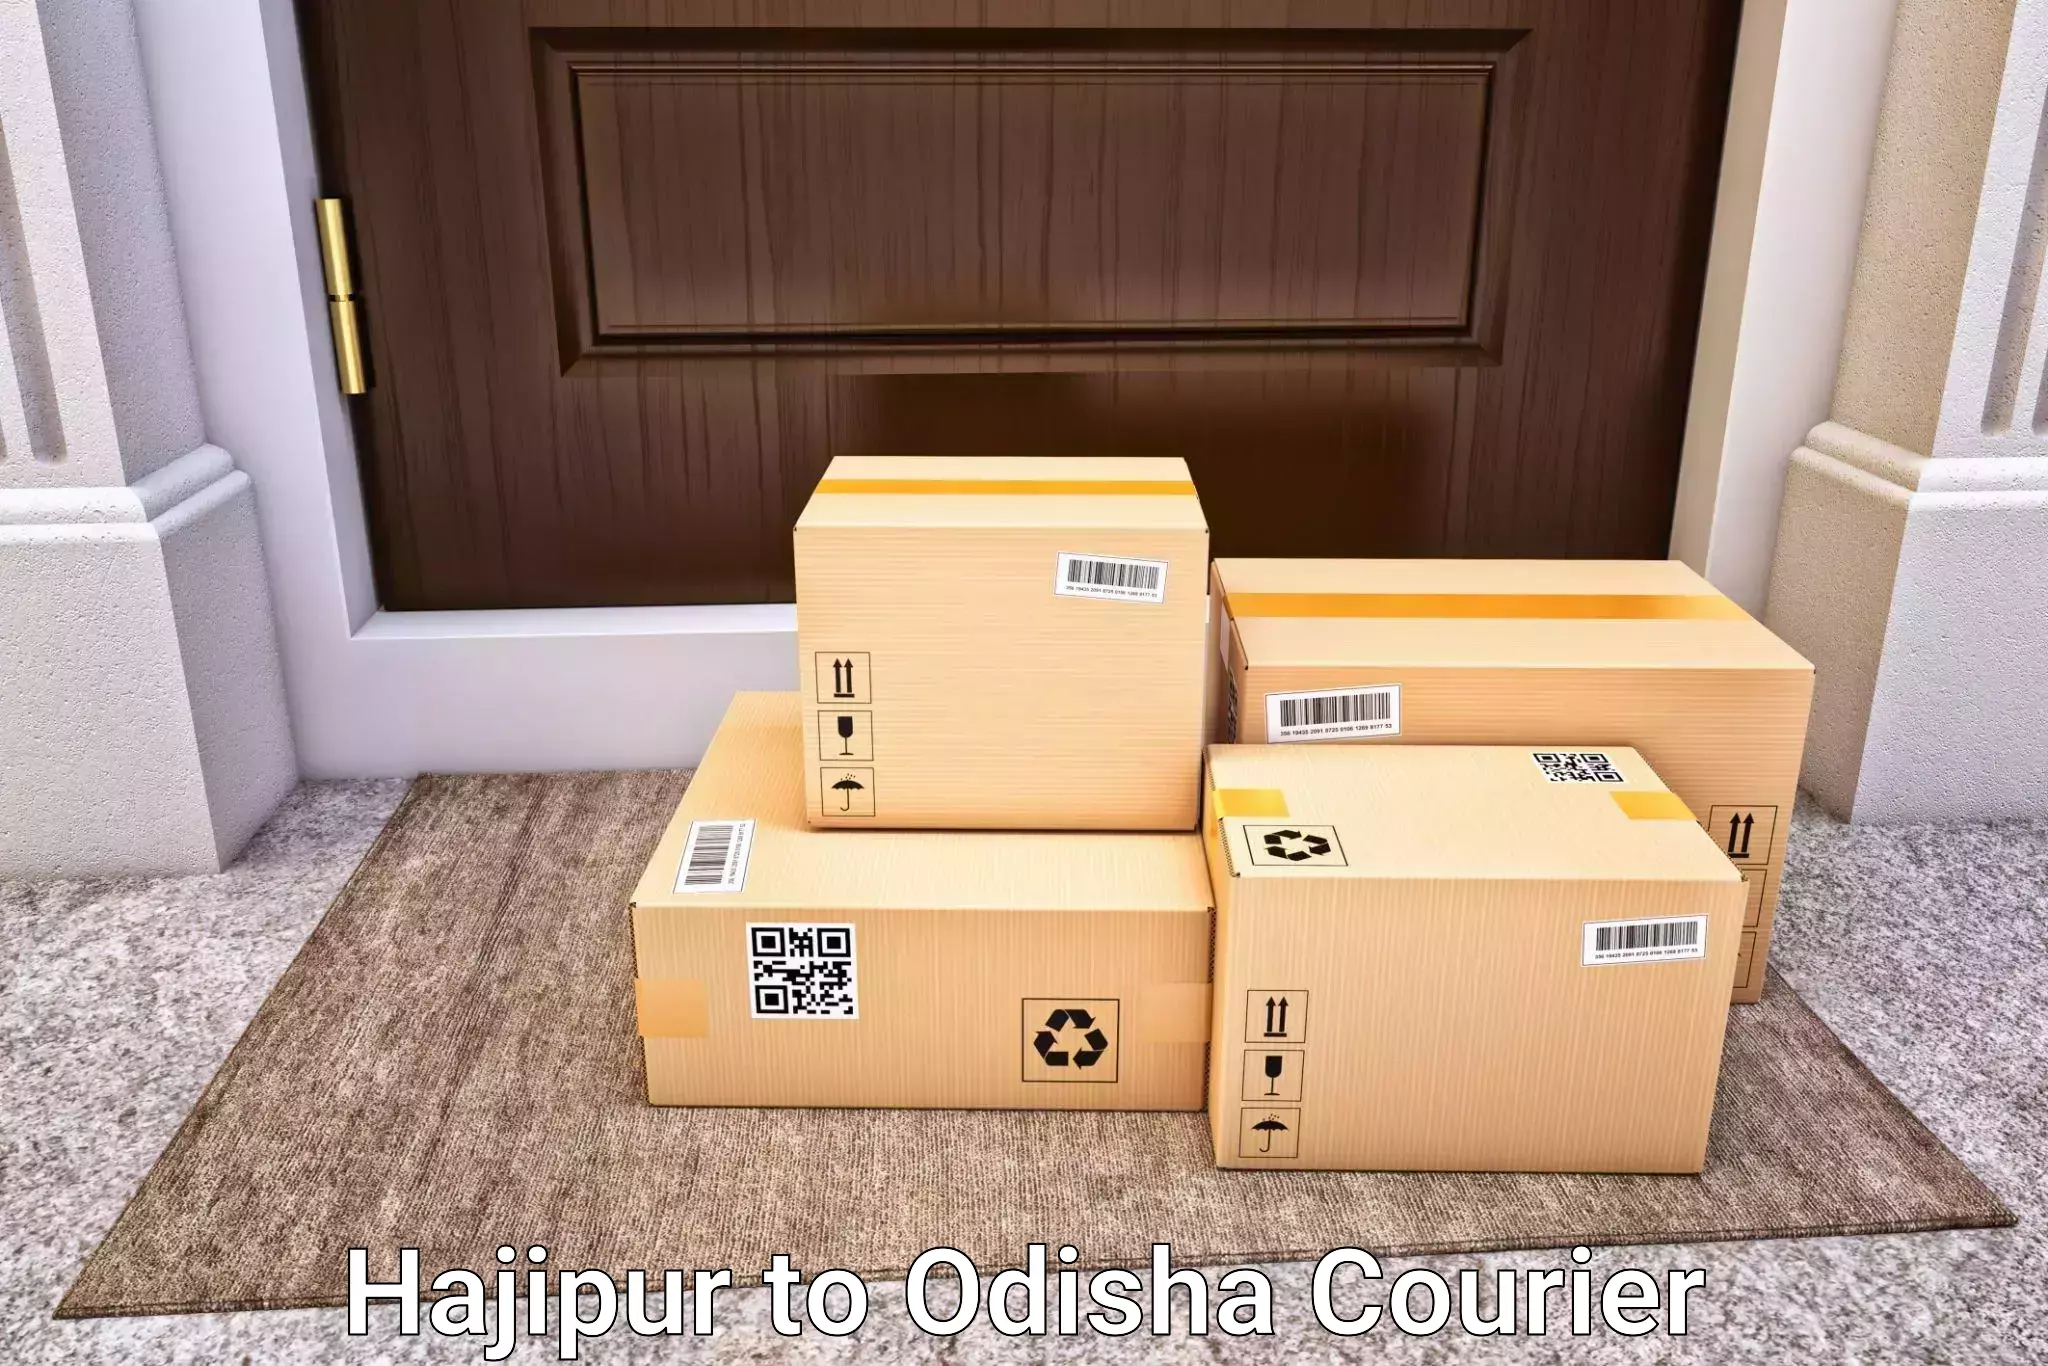 Hassle-free luggage shipping Hajipur to Mathili